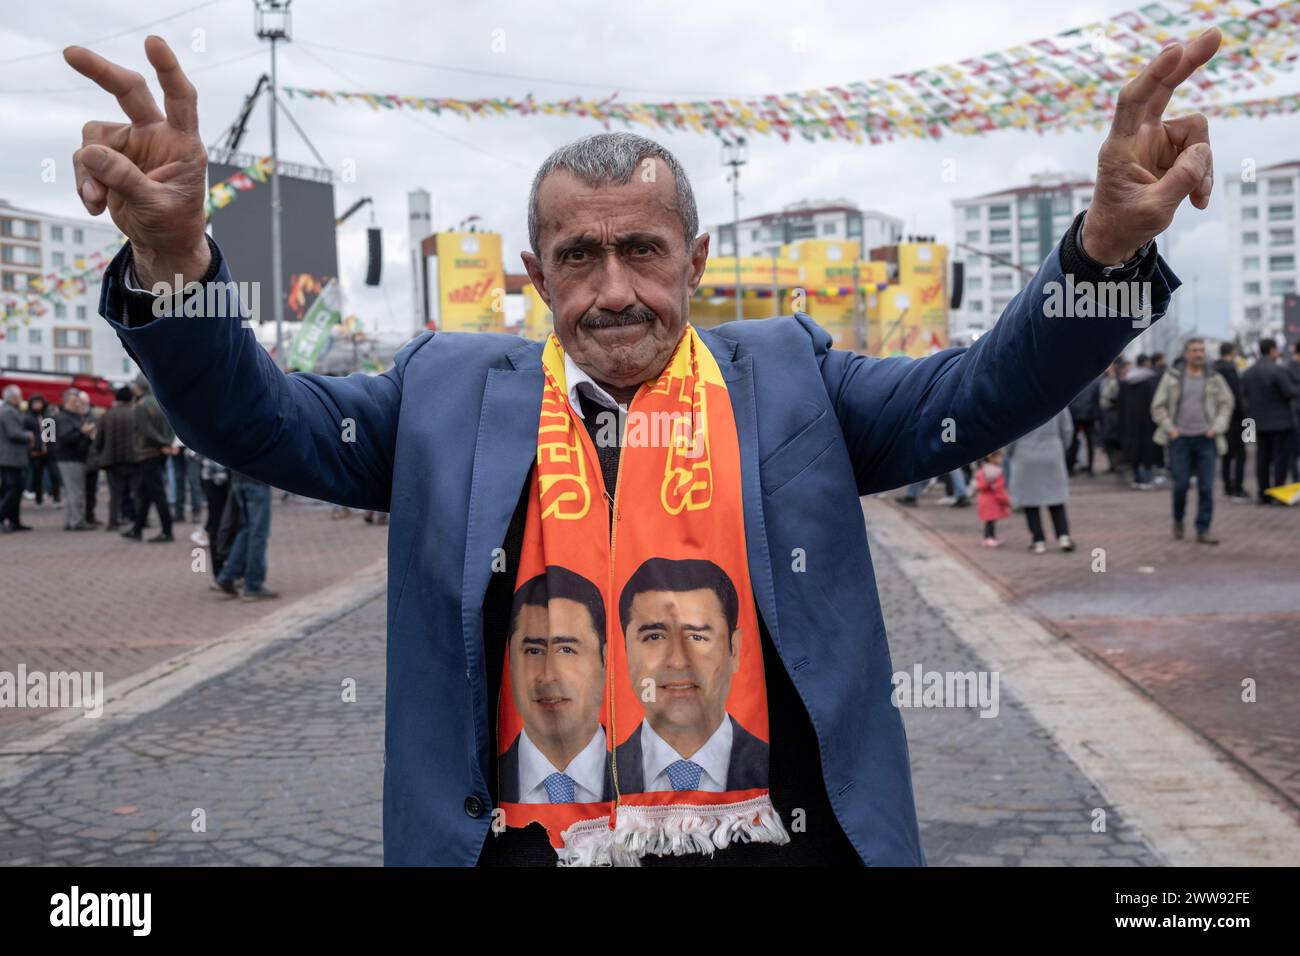 Ein alter Mann, der einen Schal mit Fotos des inhaftierten kurdischen Politikers Selahattin Demirtas trägt, macht Siegeszeichen. Tausende von Menschen versammelten sich in Diyarbakir und feierten Newroz, das als die Ankunft des Frühlings und des neuen Jahres des persischen Kalenders gilt. Sie füllten den Newroz Park mit grünen, roten und gelben Fahnen und hatten Spaß beim Singen kurdischer Lieder. Stockfoto